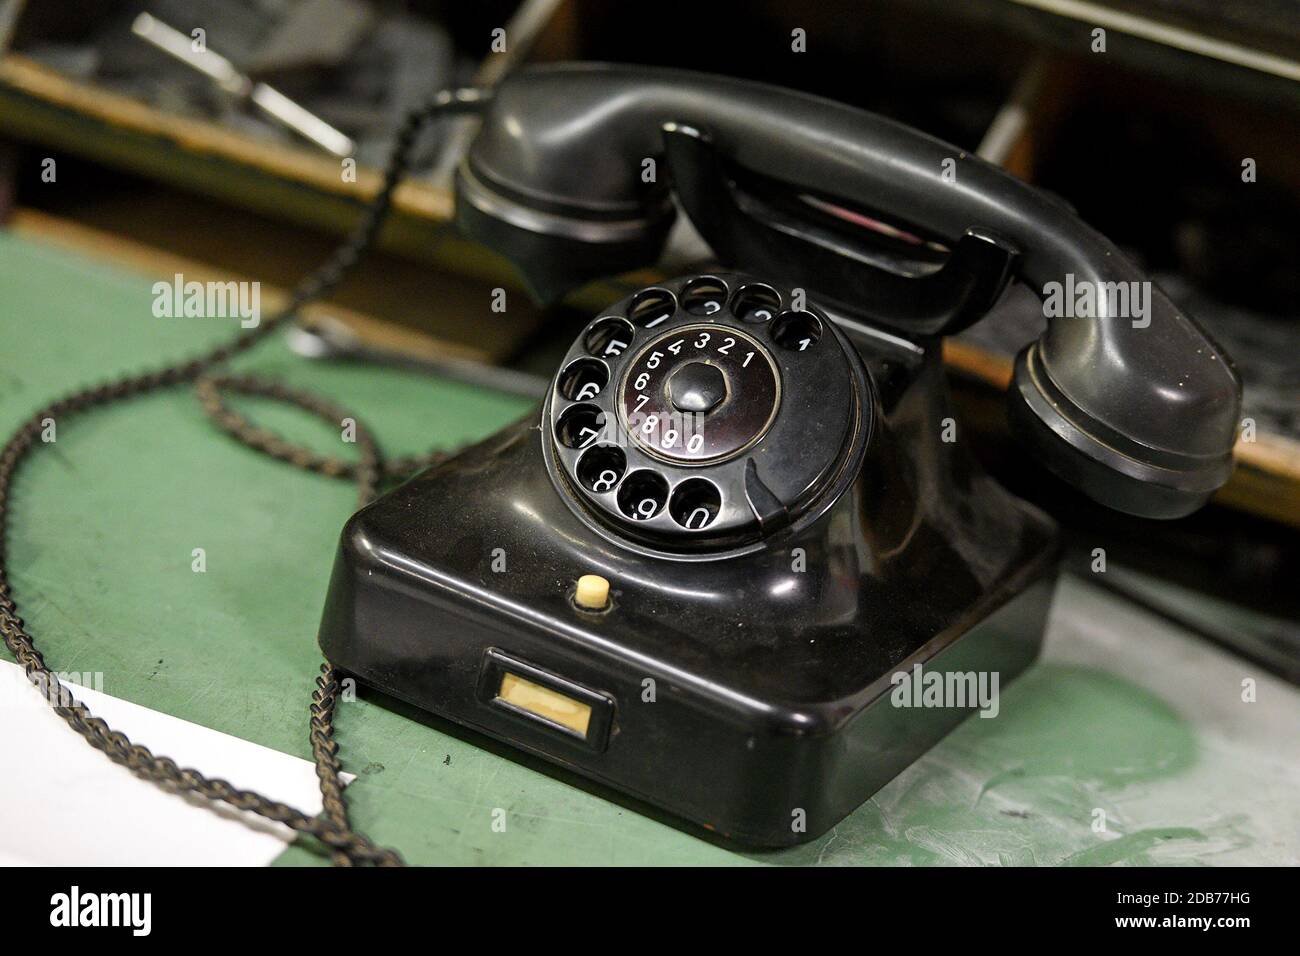 Ein altes historisches Telefon mit Wählscheibe - An old historic rotary phone Stock Photo